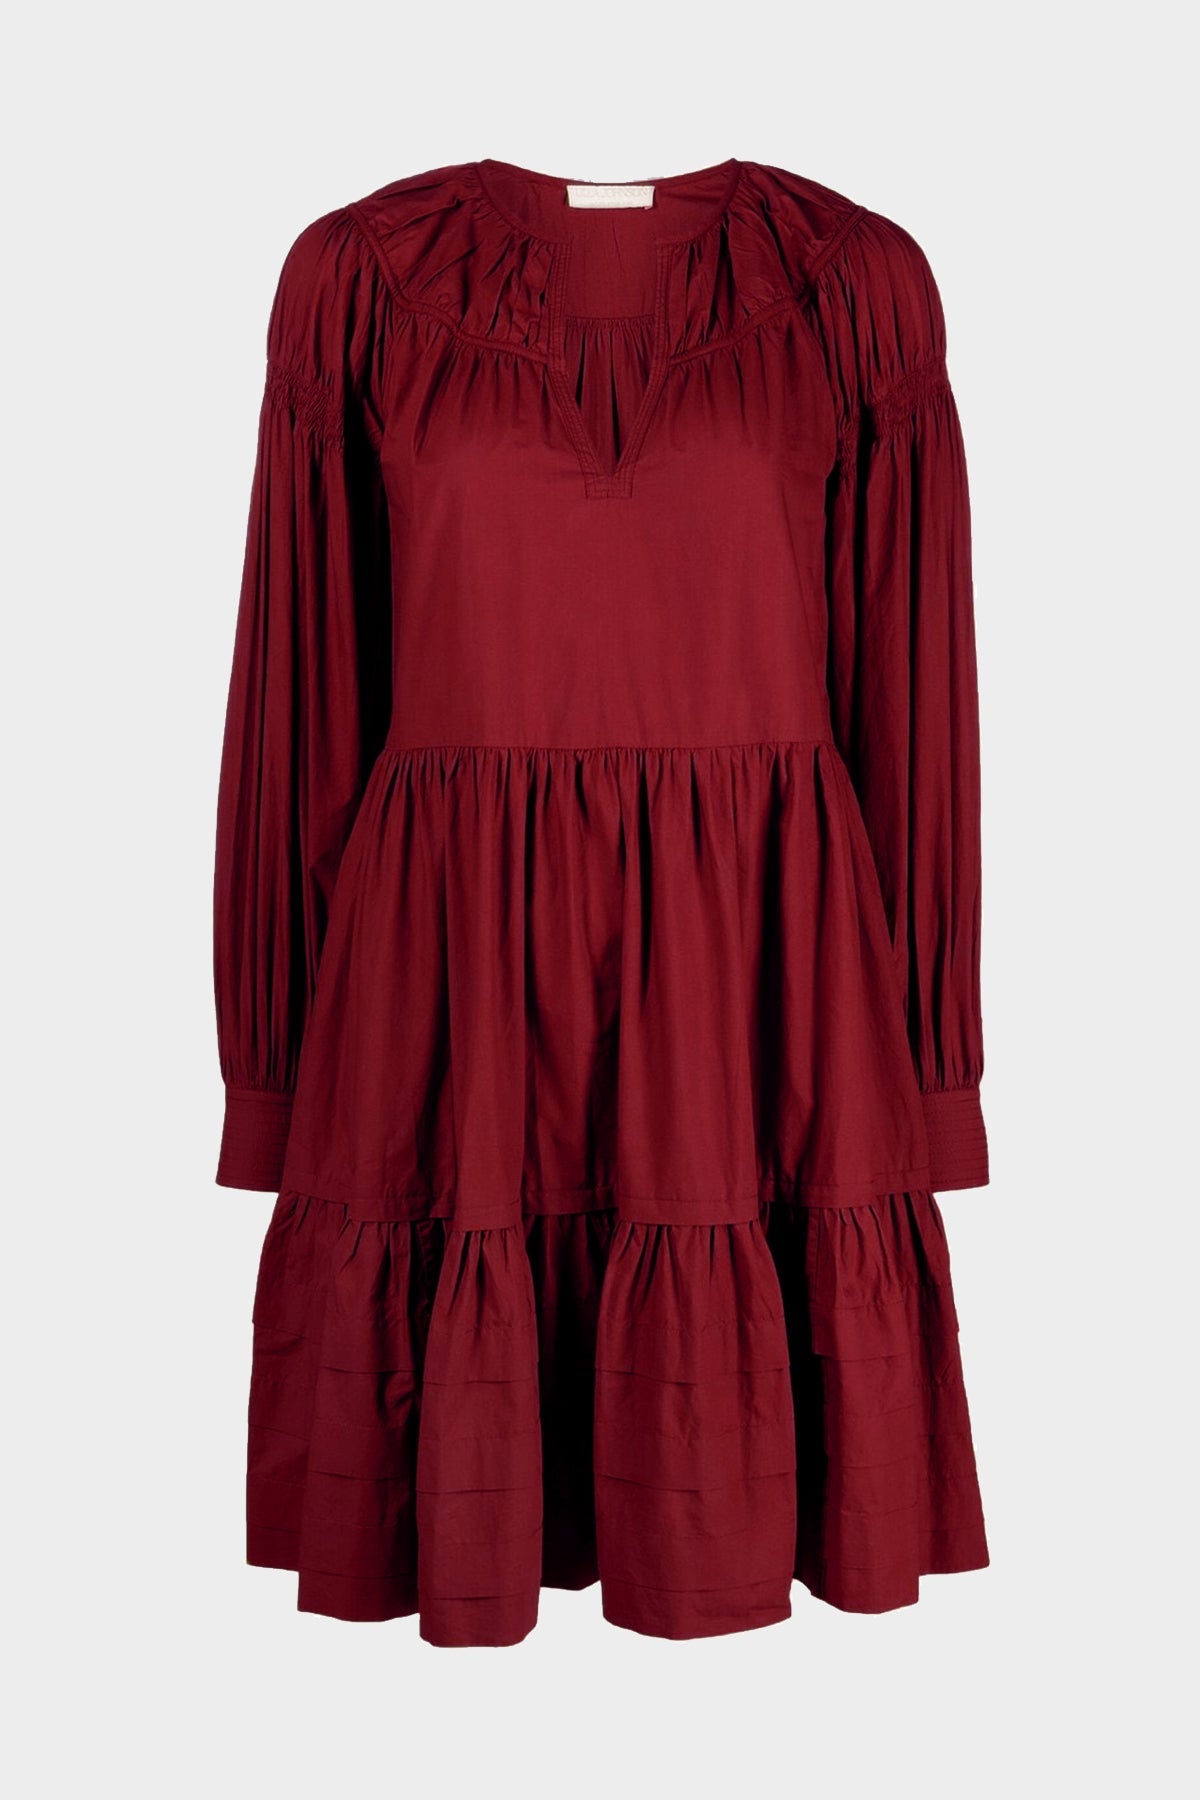 Rosa Dress in Bordeaux - shop-olivia.com